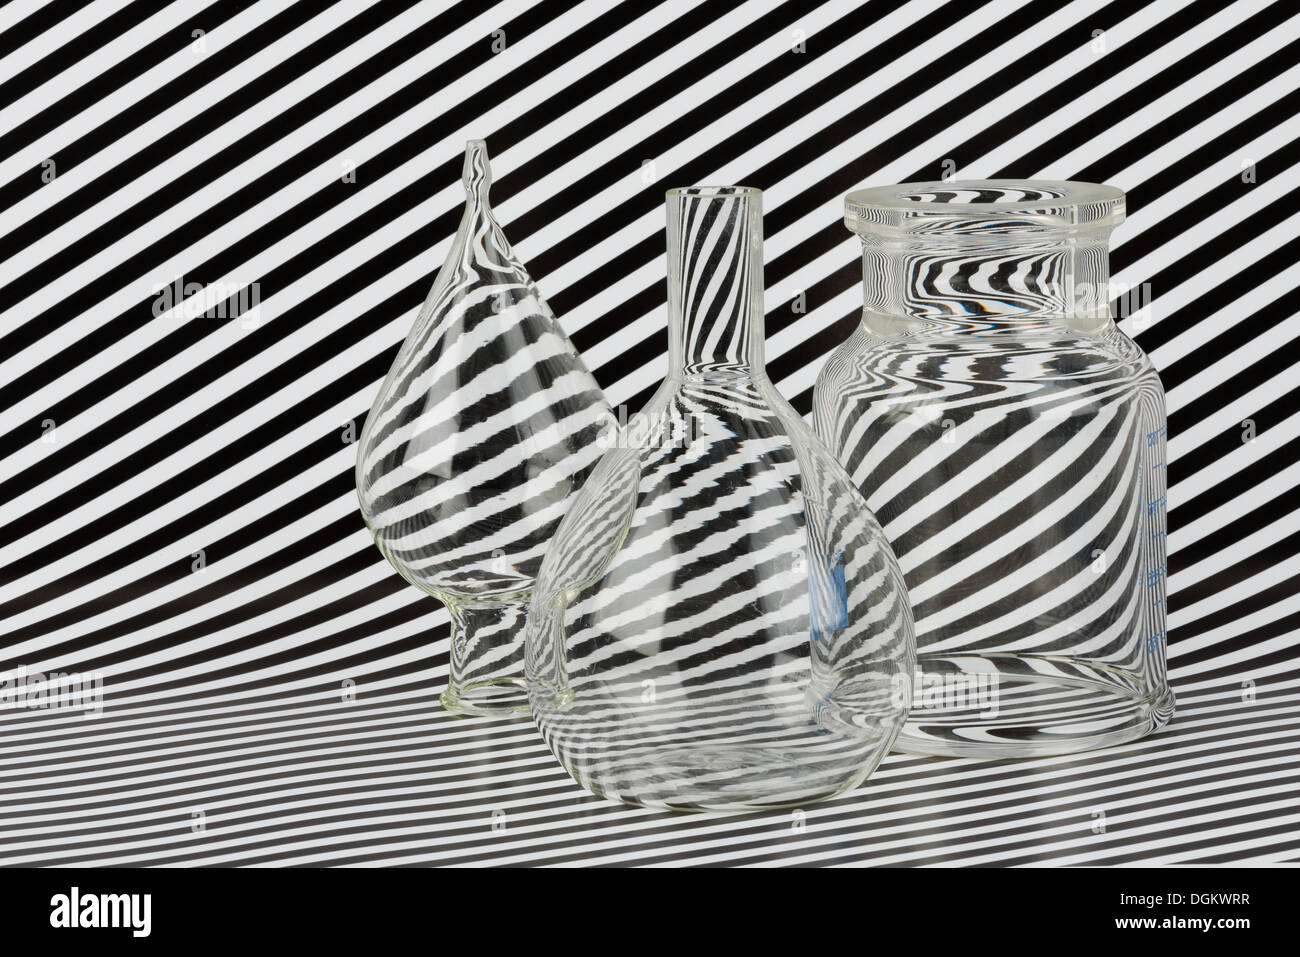 Schéma de distorsion optique avec la dispersion de la réfraction de la lumière à travers le verre et verre noir et blanc lignes parallèles Banque D'Images